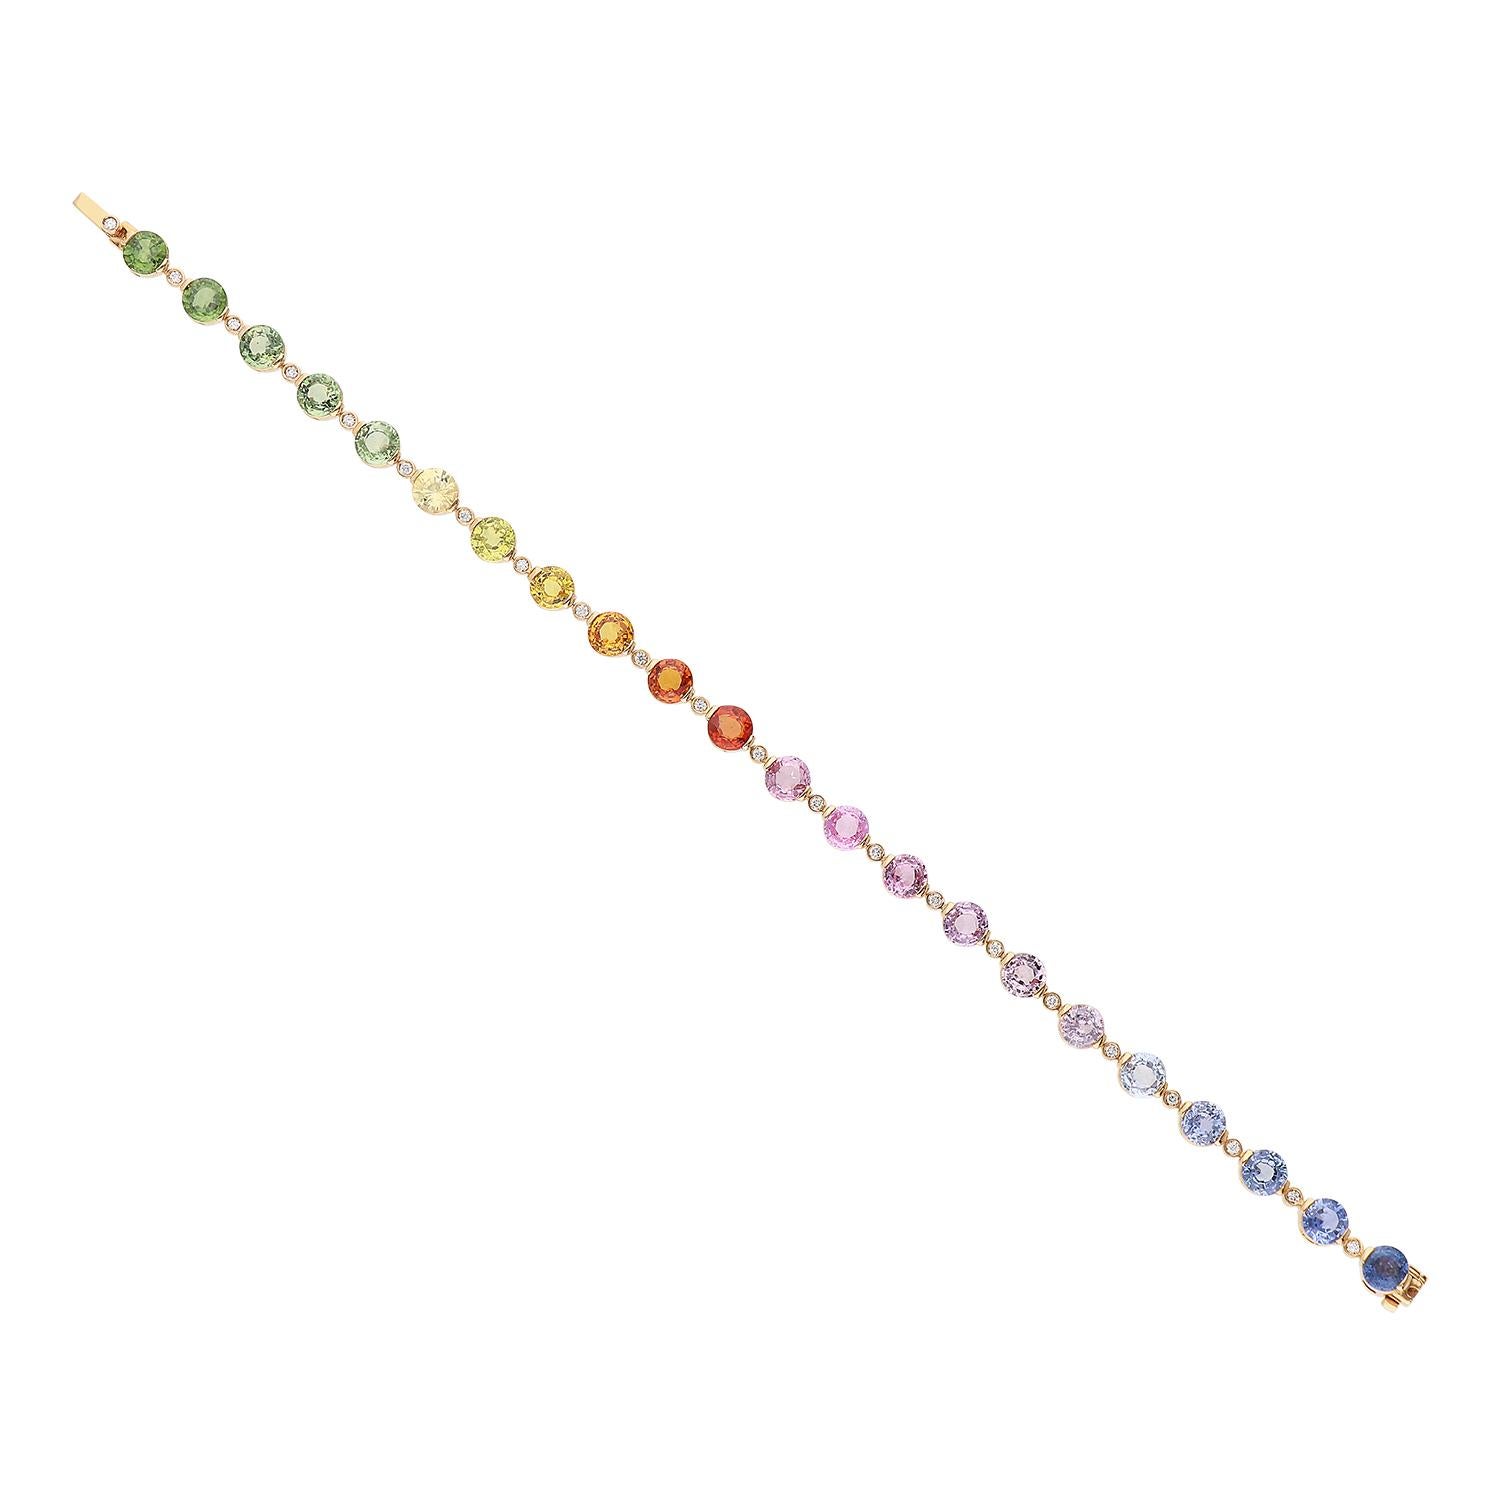 Ein elegantes Tennisarmband aus 18-karätigem Roségold mit einem Gesamtgewicht von 11,60 Gramm, mit mehrfarbigen Saphiren im Rundschliff, die in einem Regenbogenfarbton von 14,33 Karat ausgewählt wurden. Zwischen jedem Saphir befindet sich ein